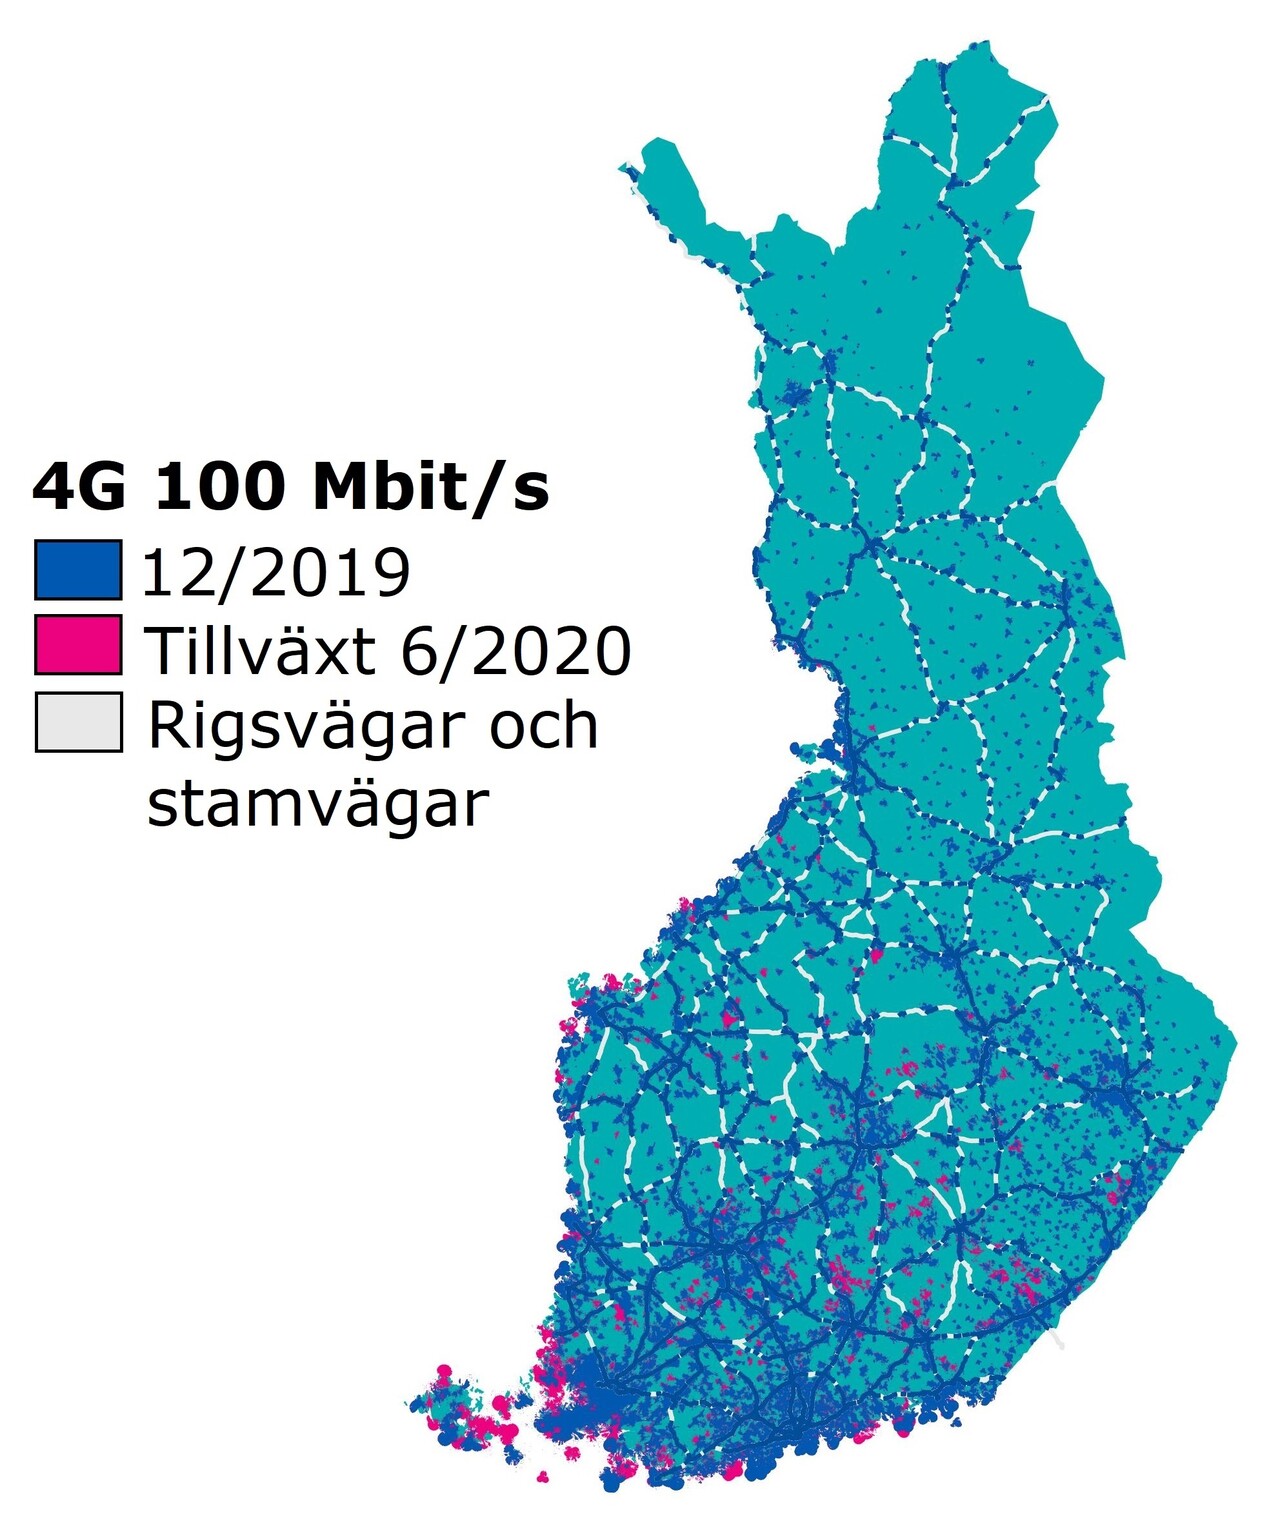 4G 100 Mbit/s täckningen i juni 2020: Abonnemang i 4G-nätet med en hastighet på 100 Mbit/s täckte 18 procent av Finlands landareal i juni 2020. Nätets tillväxt var 2 procentenheter under ett halvt år. Nätet täckte 57 procent av riks- och stamvägarna.